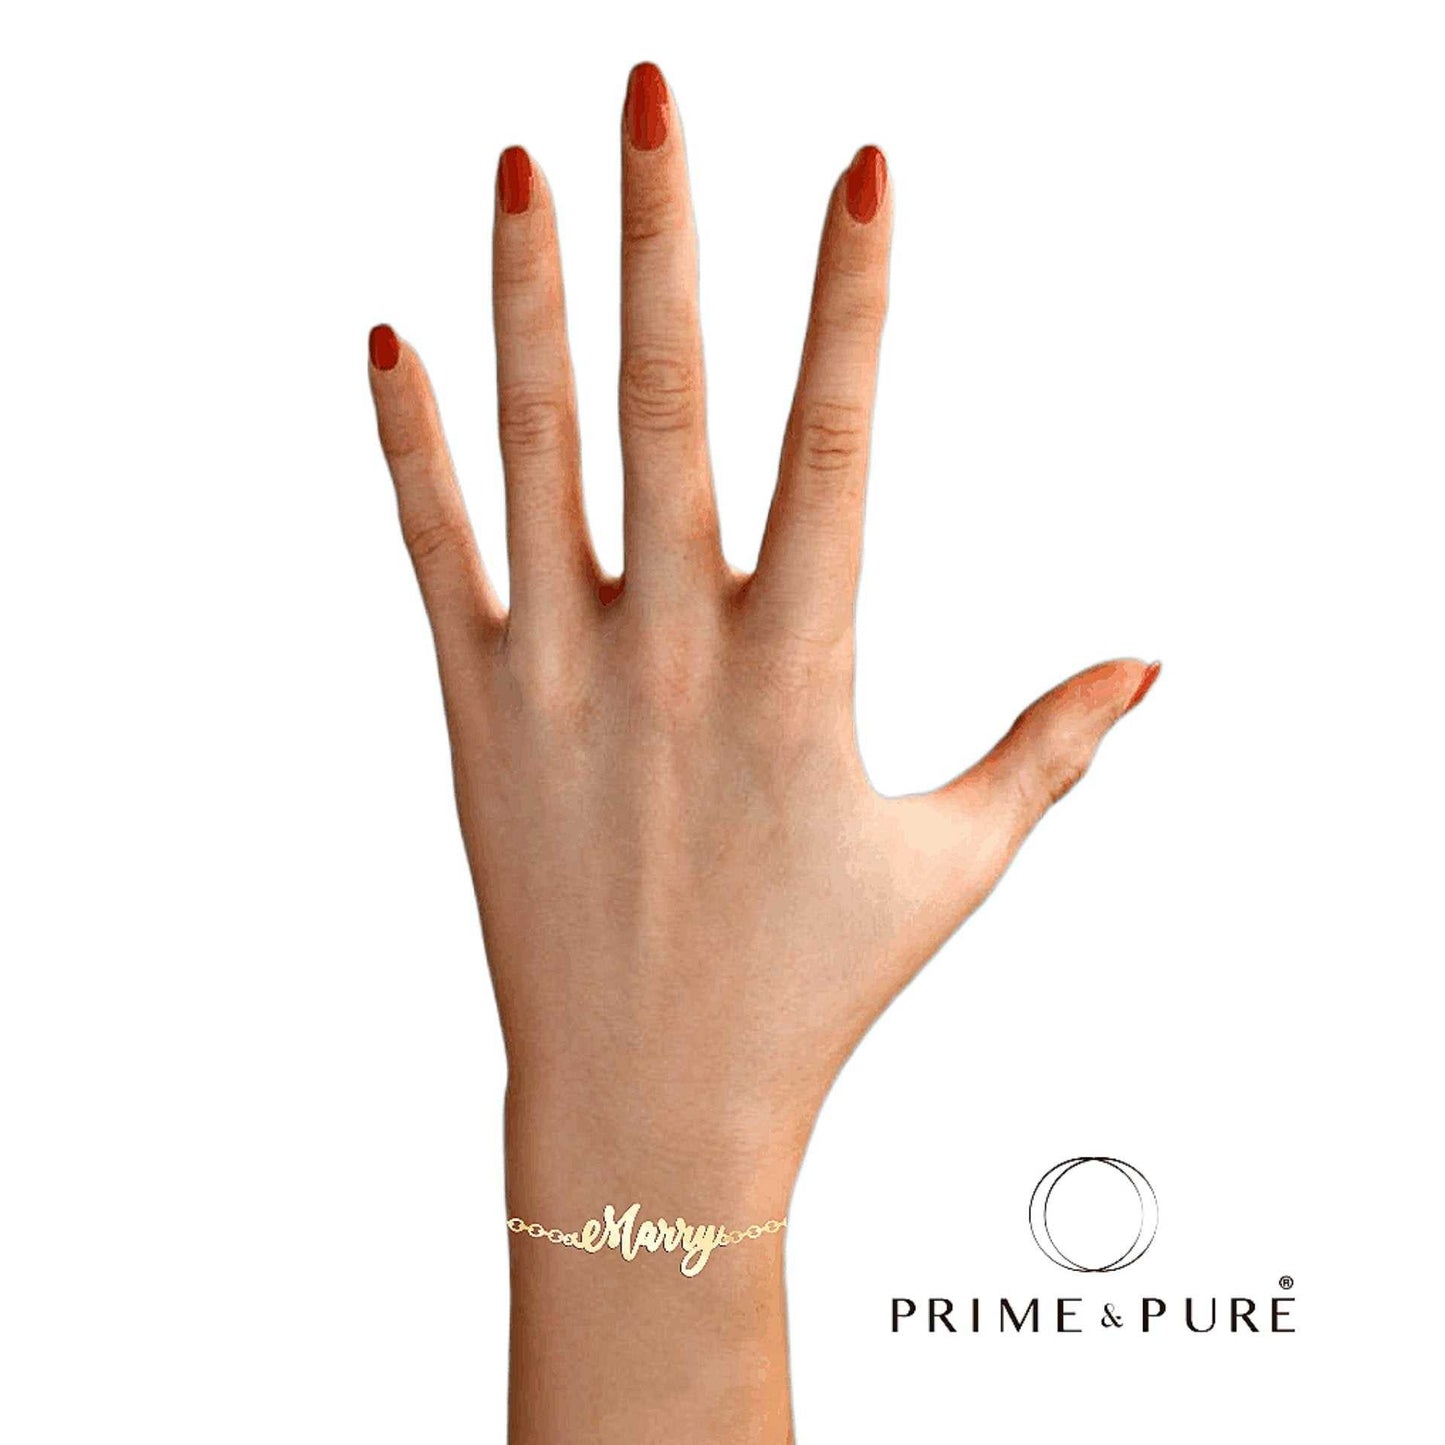 Stylish Name Bracelet - Prime & Pure